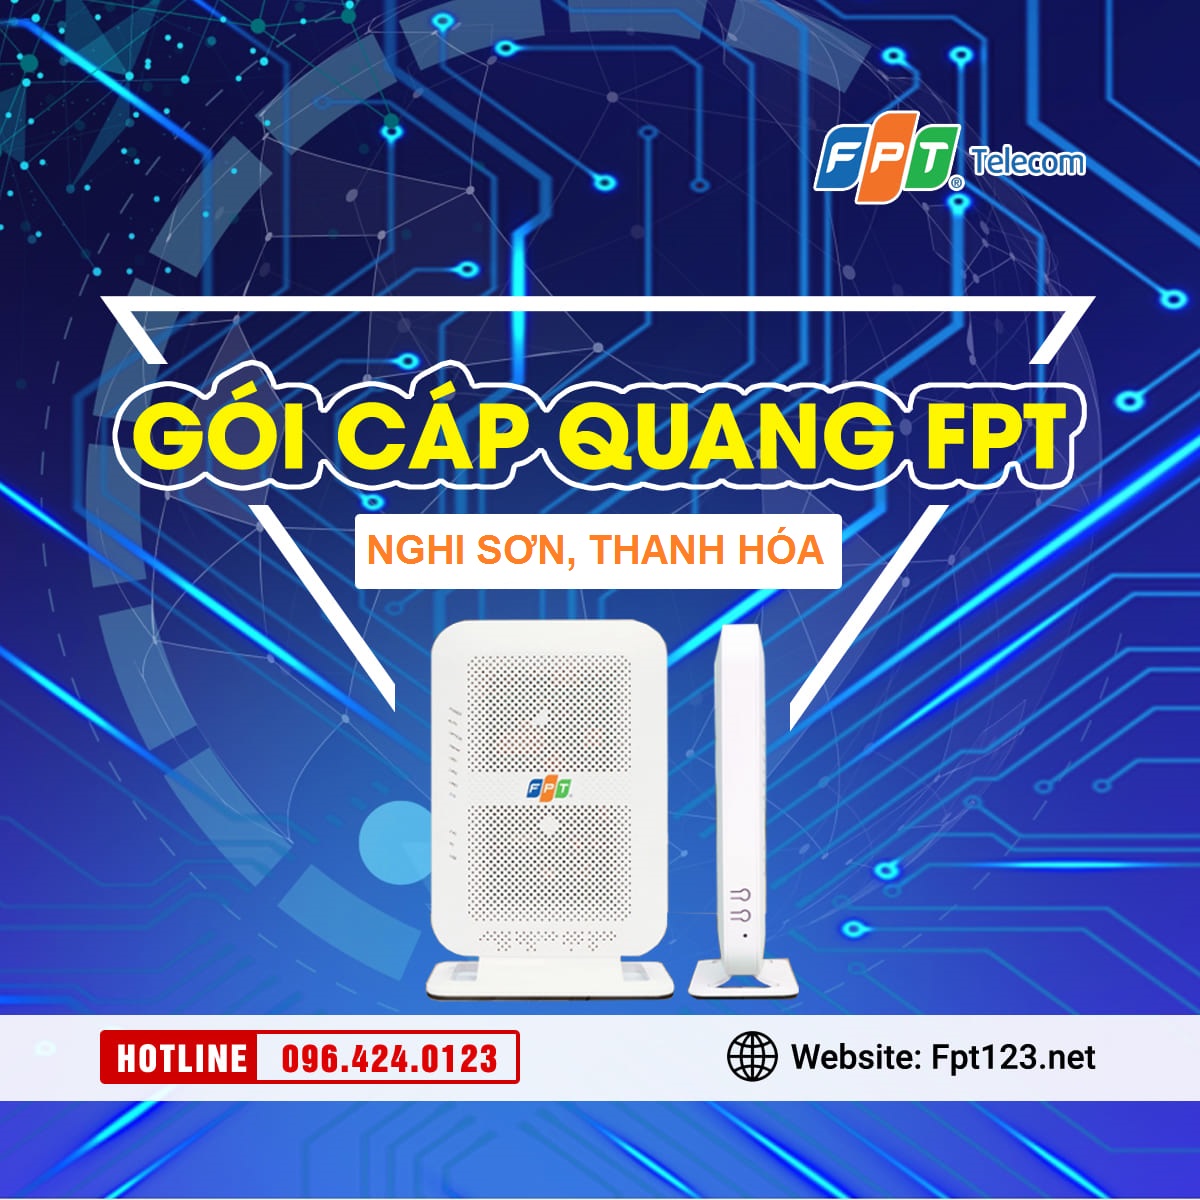 Gói cáp quang FPT Nghi Sơn, Thanh Hóa